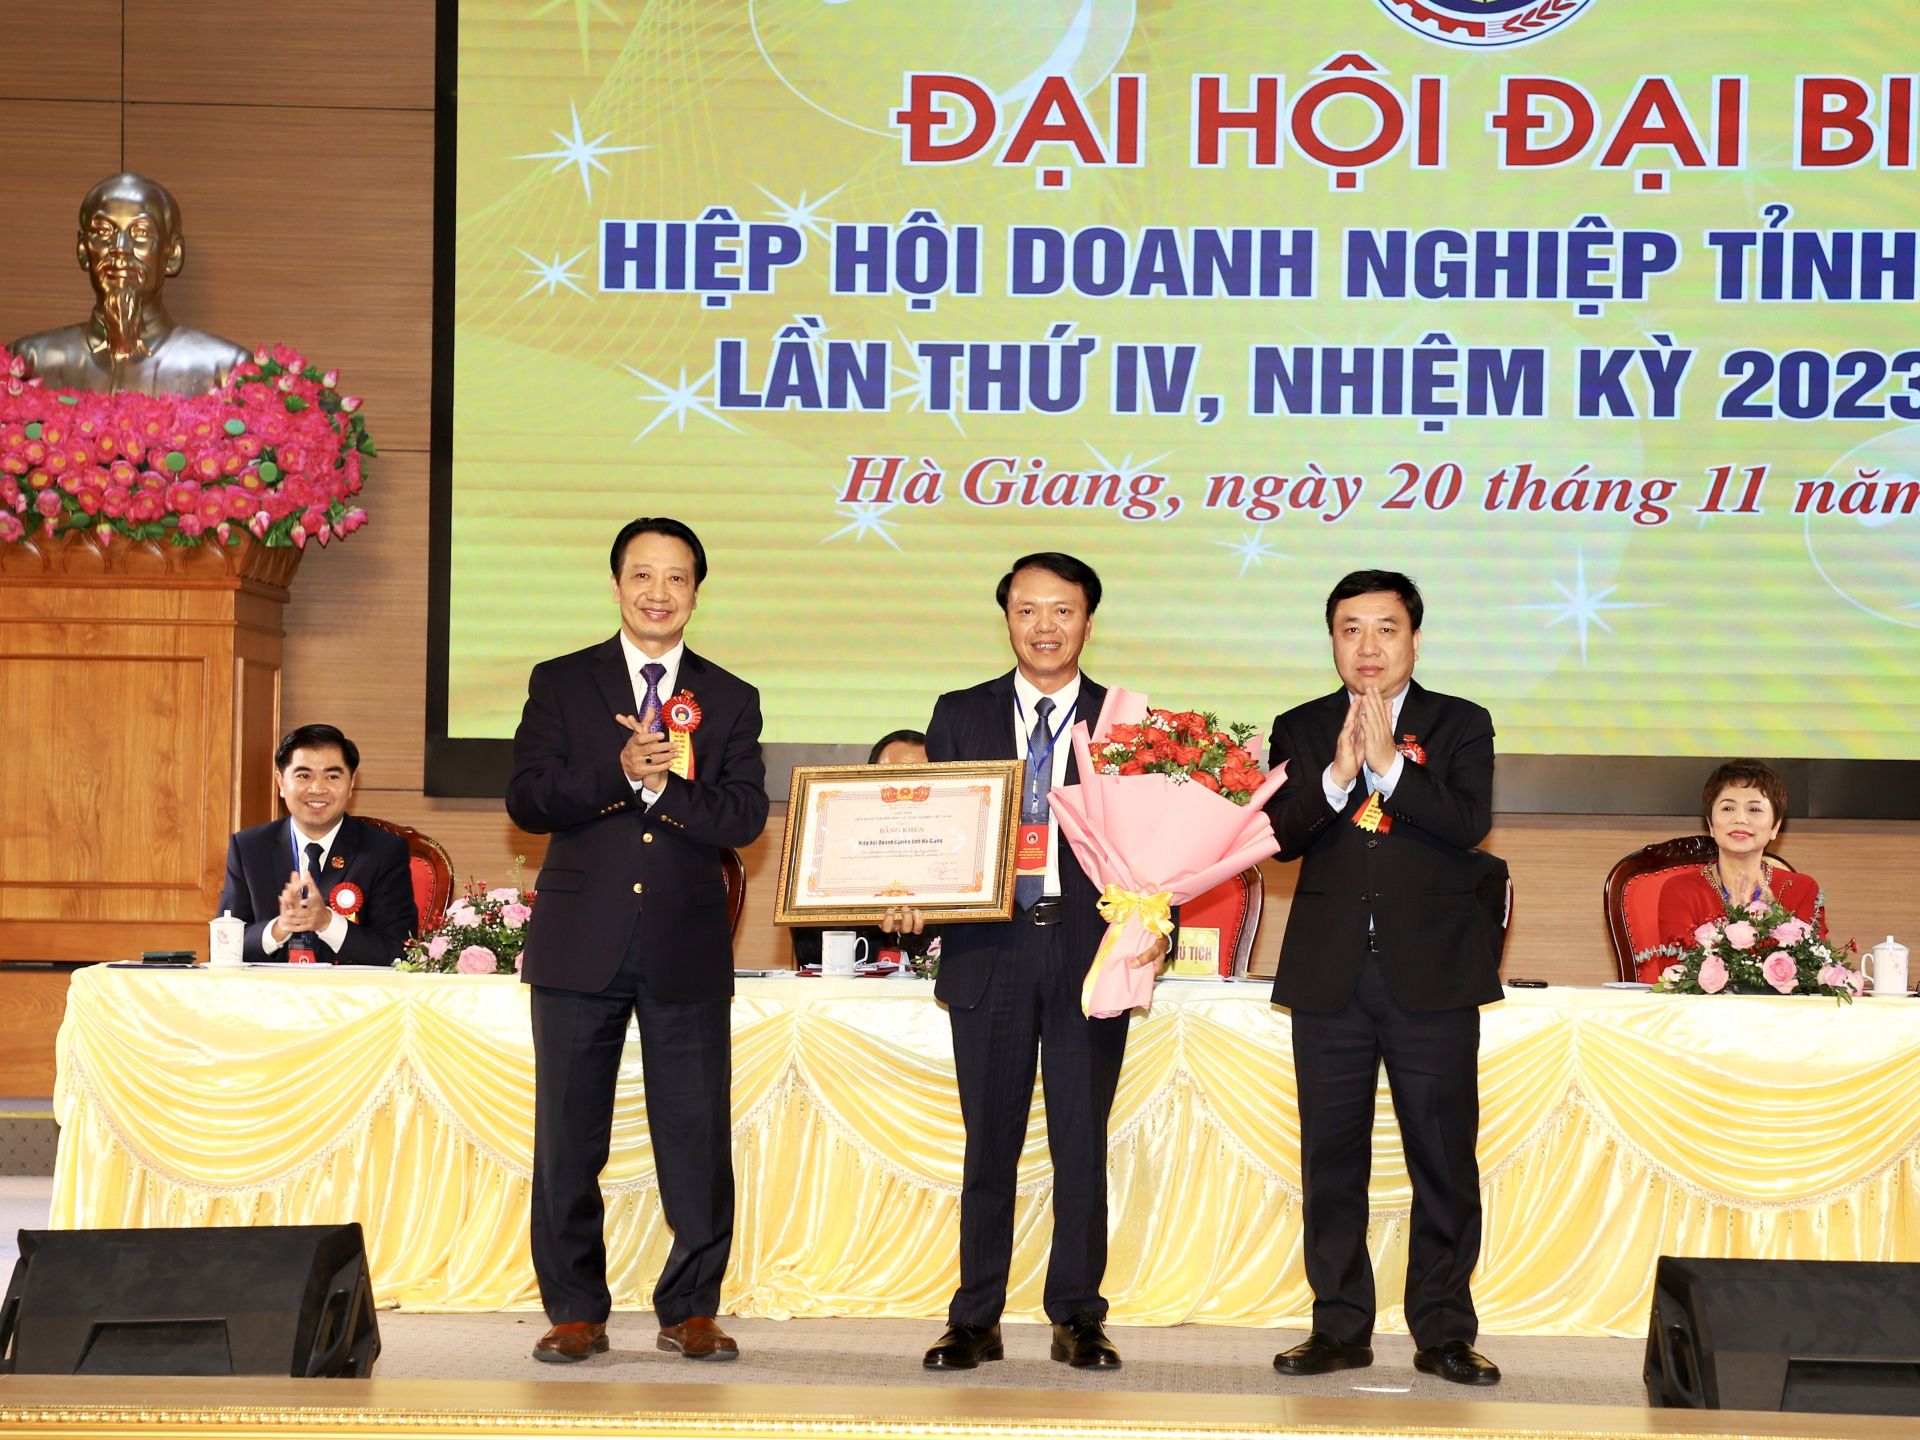 Quyền Bí thư Tỉnh ủy Nguyễn Mạnh Dũng và Phó Chủ tịch Liên đoàn thương mại và Công nghiệp Việt Nam tặng hoa và Bằng khen của Liên đoàn cho Hiệp hội Doanh nghiệp tỉnh